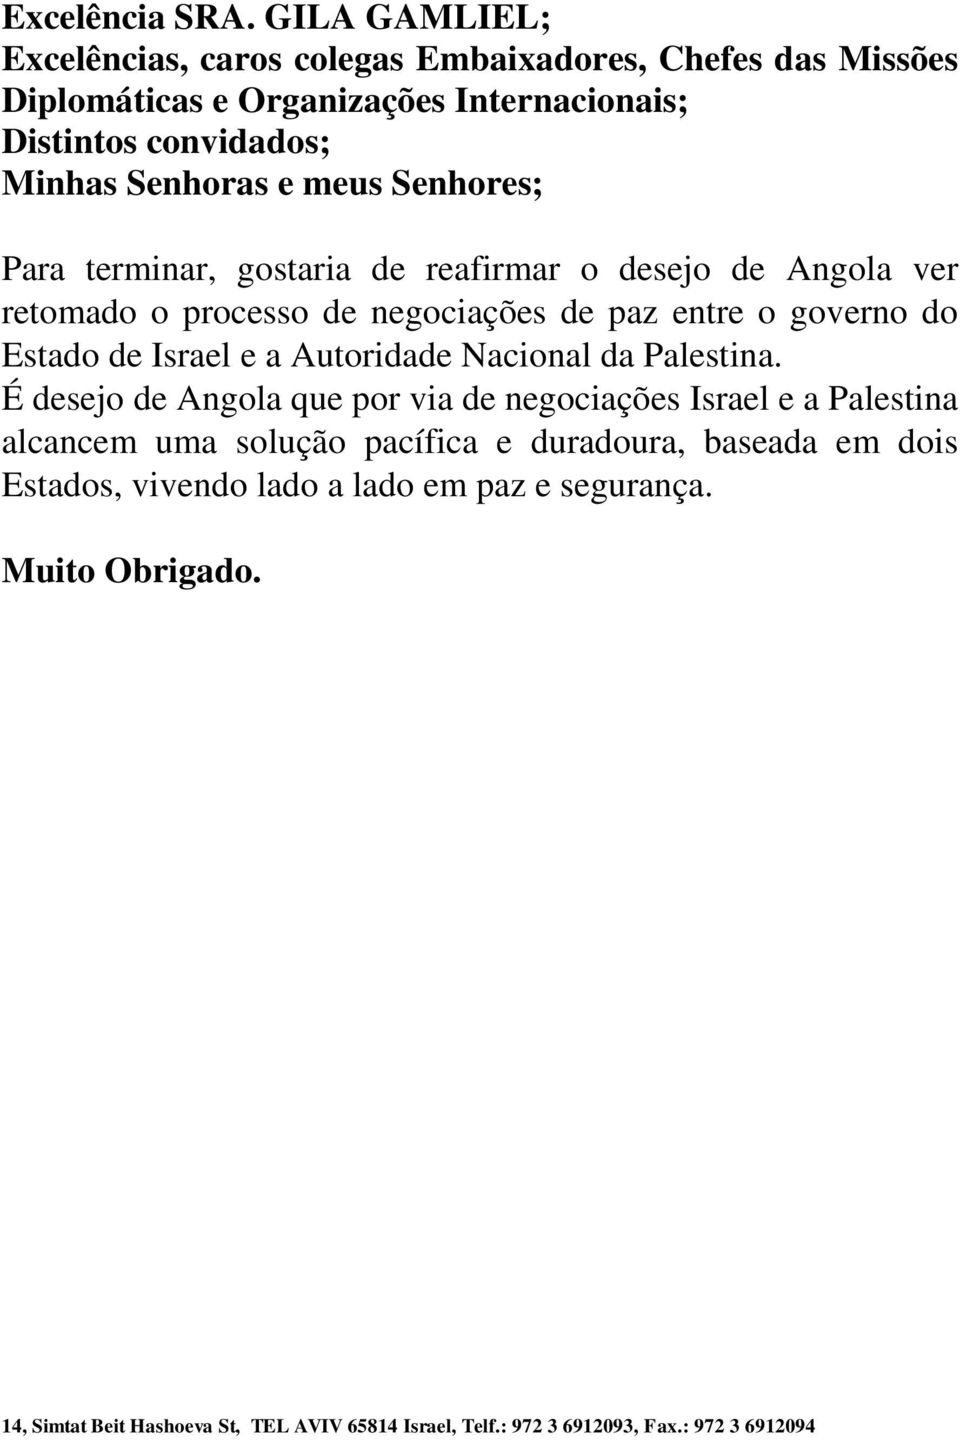 Senhores; Para terminar, gostaria de reafirmar o desejo de Angola ver retomado o processo de negociações de paz entre o governo do Estado de Israel e a Autoridade